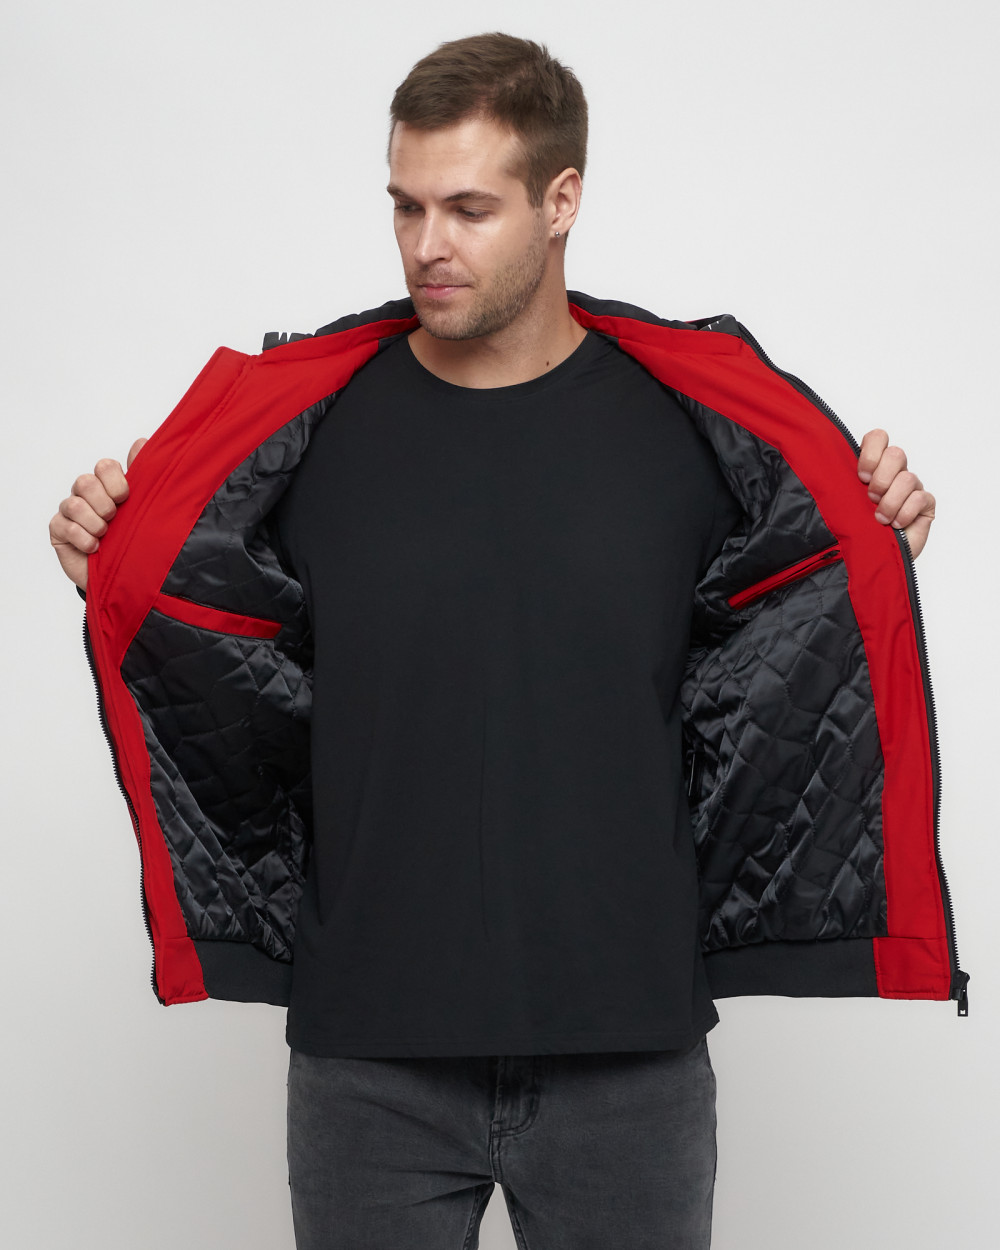 Купить куртку мужскую спортивную весеннюю оптом от производителя недорого в Москве 3367Kr 1